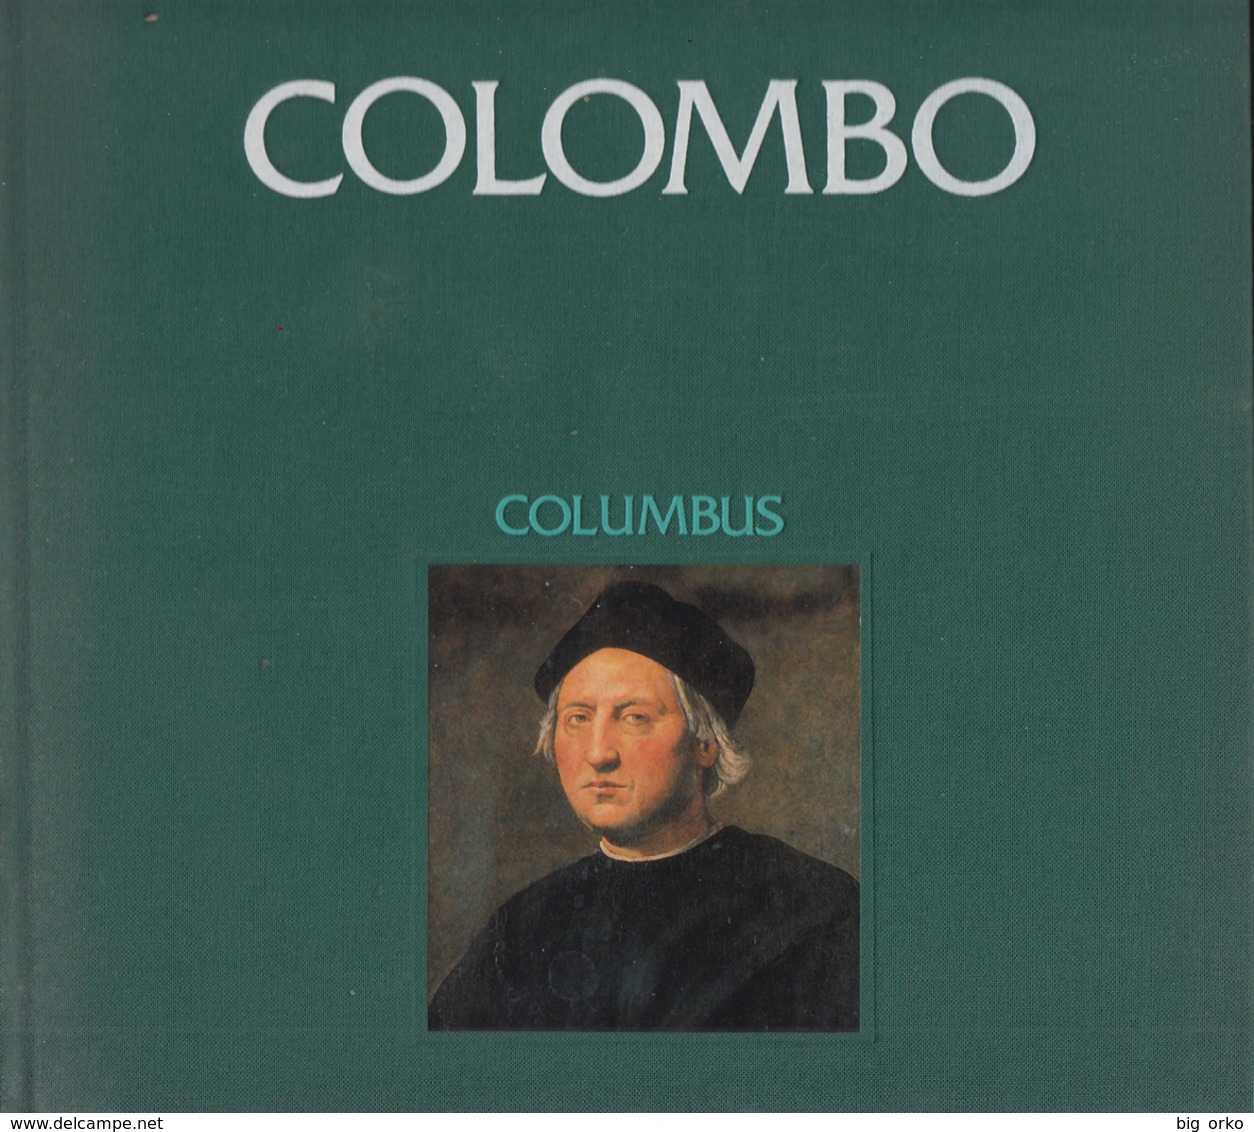 COLOMBO Di Luis Albuquerque (cm.24xcm.24) Inglese E Portoghese (copie Numerate) - Reisen